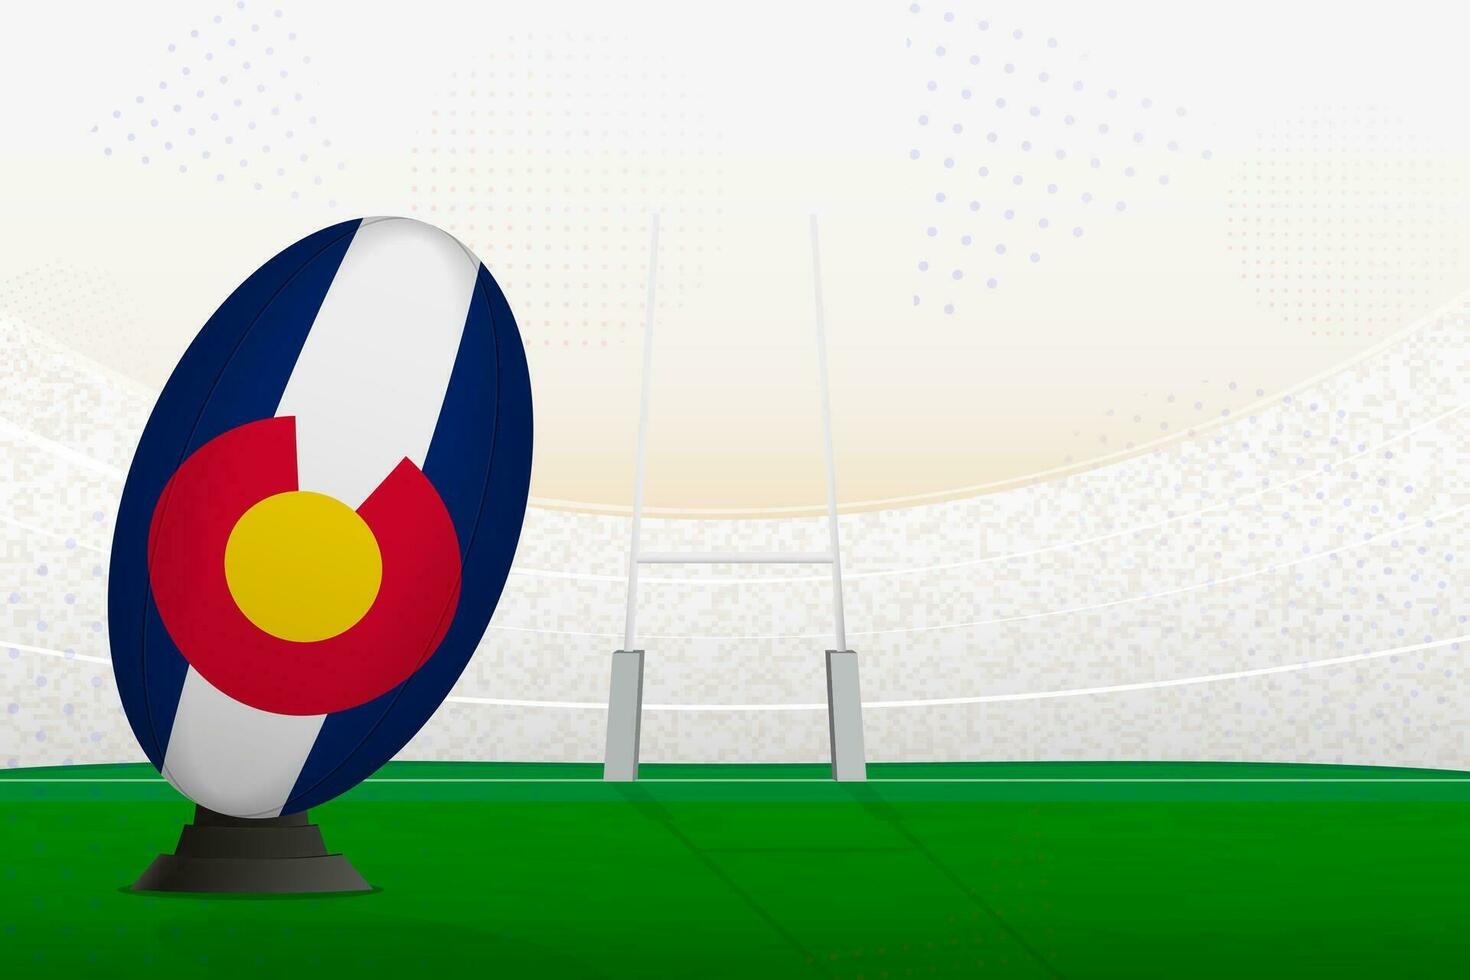 Colorado nationaal team rugby bal Aan rugby stadion en doel berichten, voorbereidingen treffen voor een straf of vrij trap. vector